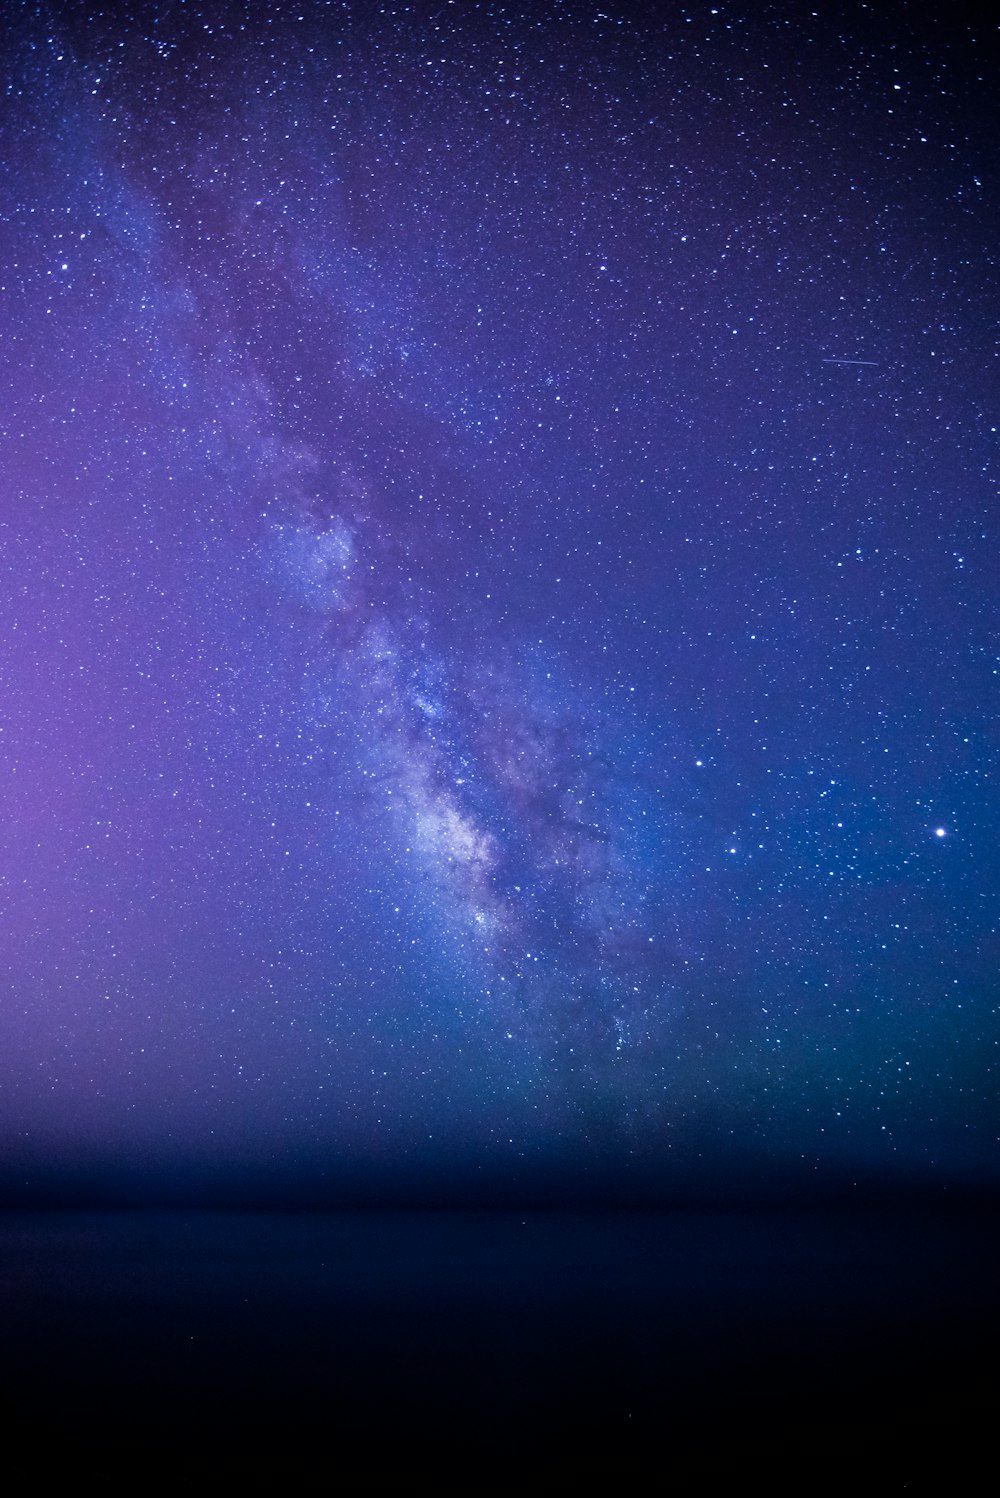 Bầu trời đầy sao lung linh là một trong những chủ đề được yêu thích nhất khi nói về thiên hà. Cùng chiêm ngưỡng những bức ảnh tuyệt đẹp về bầu trời thiên hà đầy sao lung linh và cảm nhận sự huyền bí và tuyệt vời của nó.